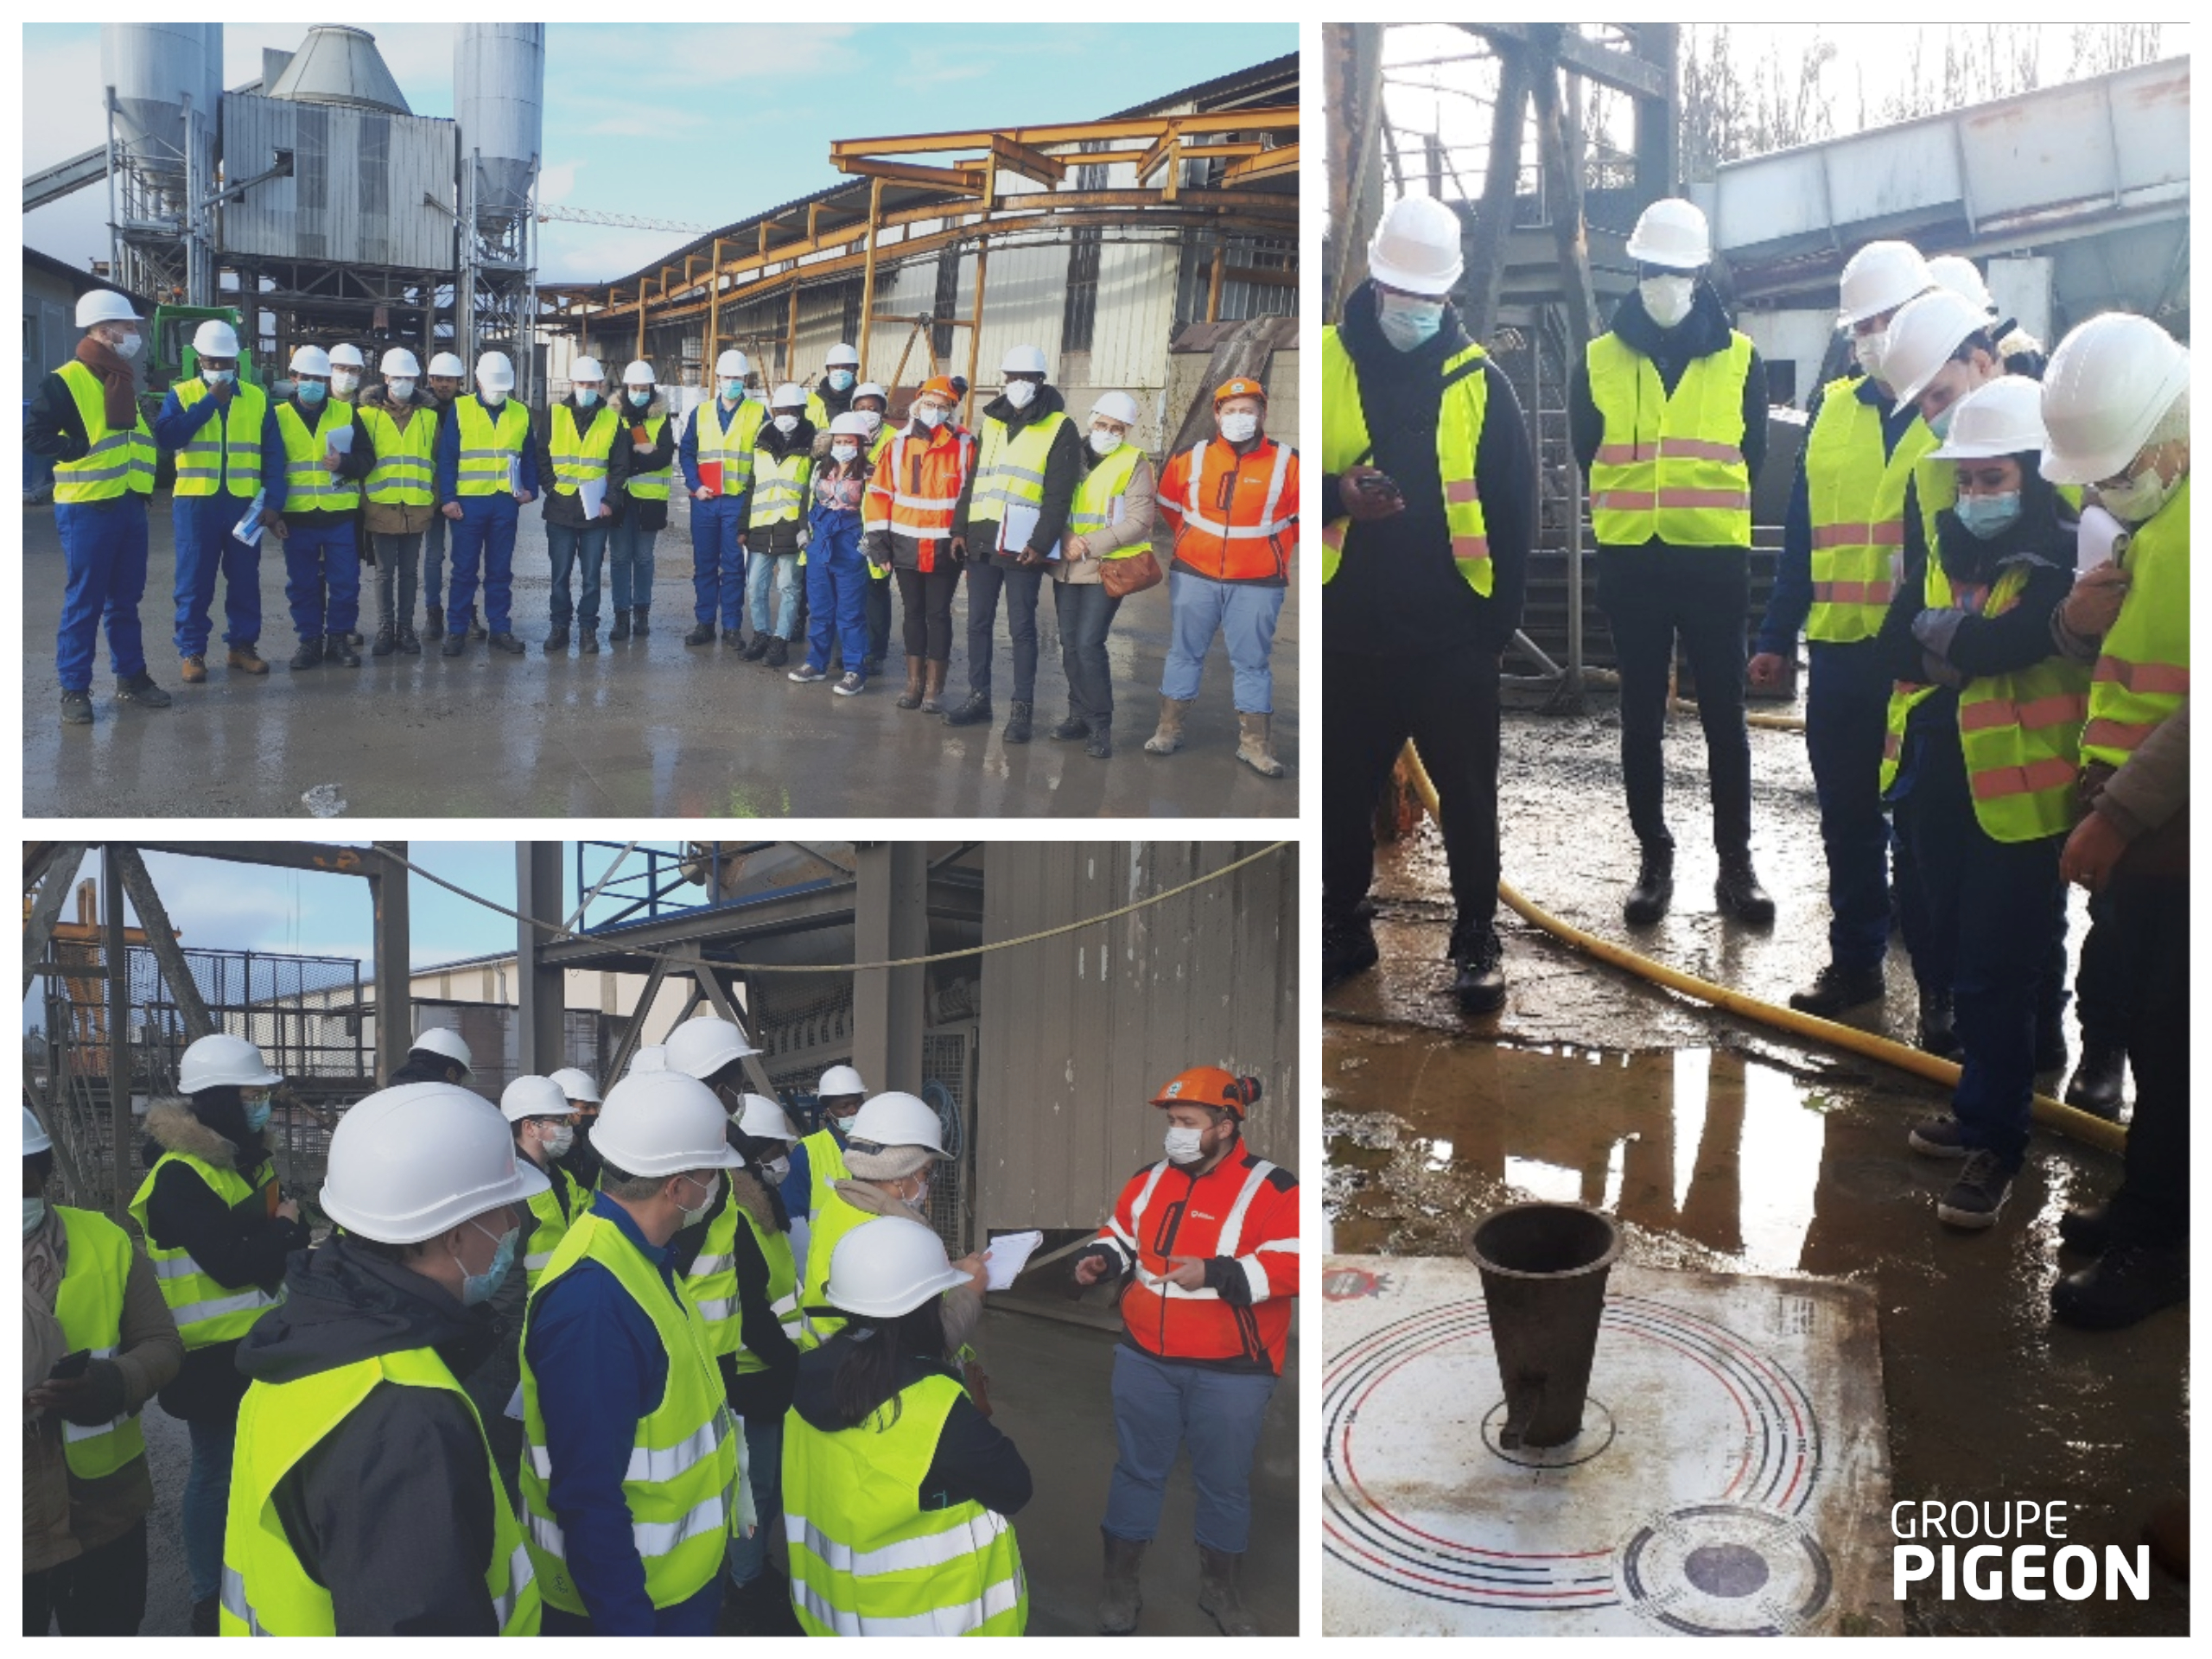 Pigeon Préfa, filiale du Groupe PIGEON, a ouvert ses portes à 16 étudiants – techniciens de laboratoire pour les matériaux de construction – de l’UNICEM